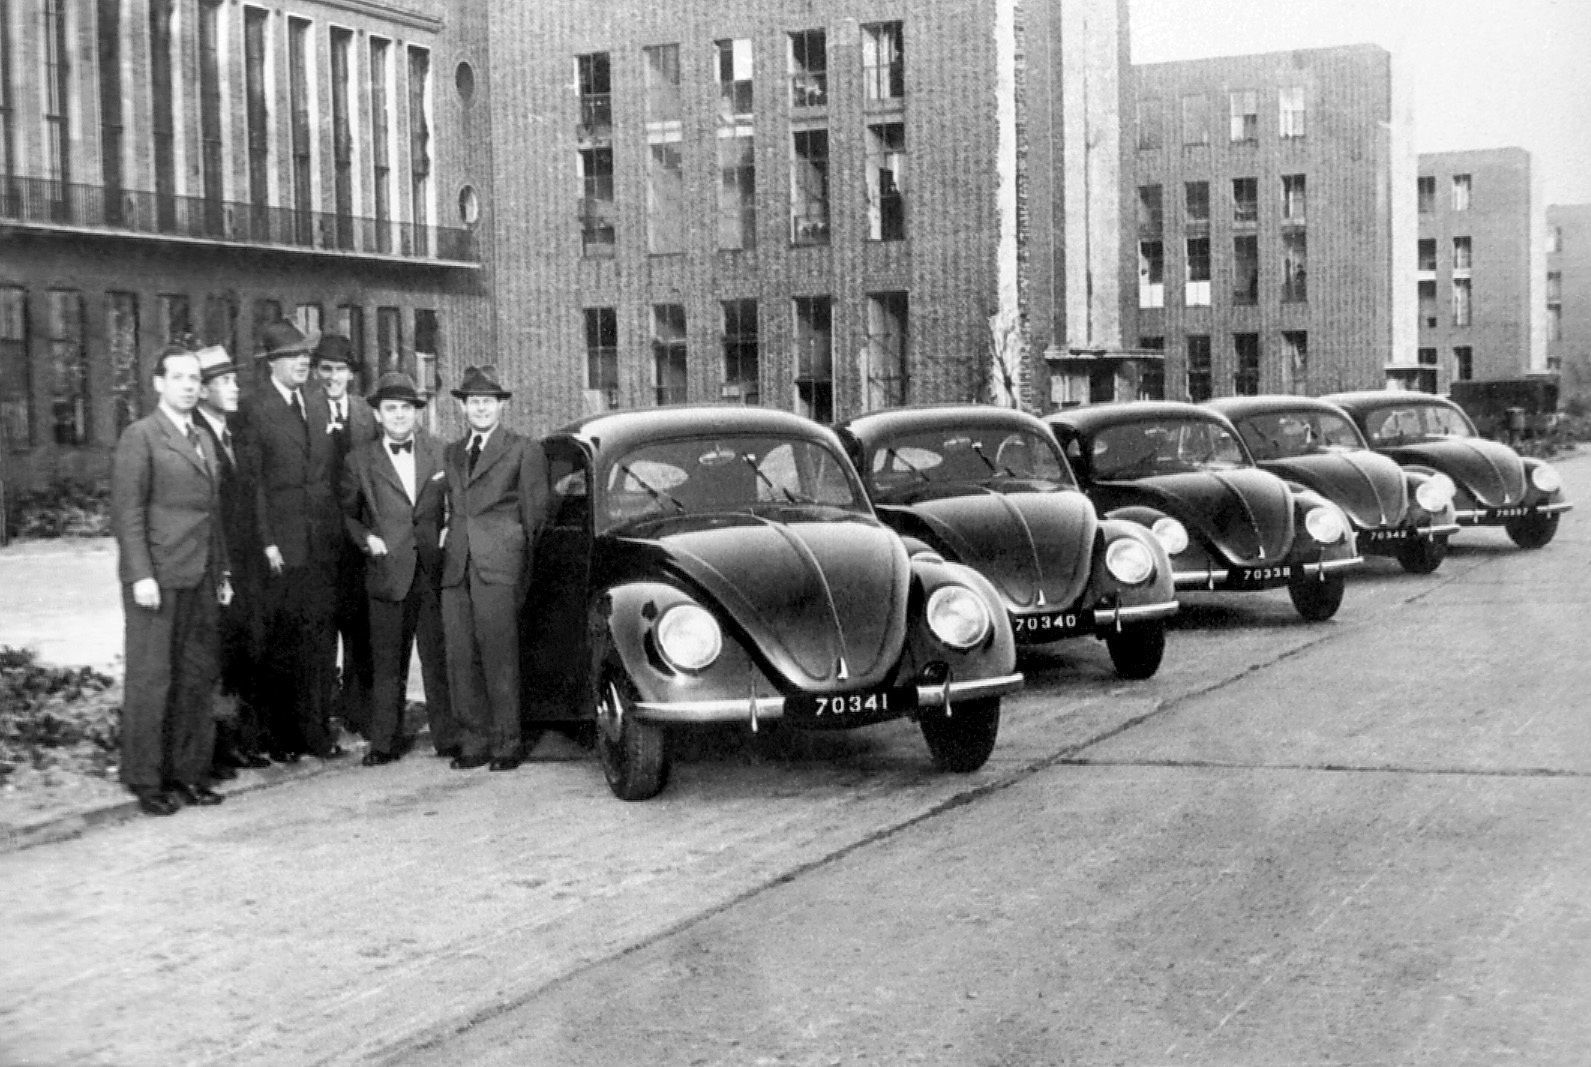 A British jump start – Volkswagen remembers the beginning of British trusteeship 75 years ago